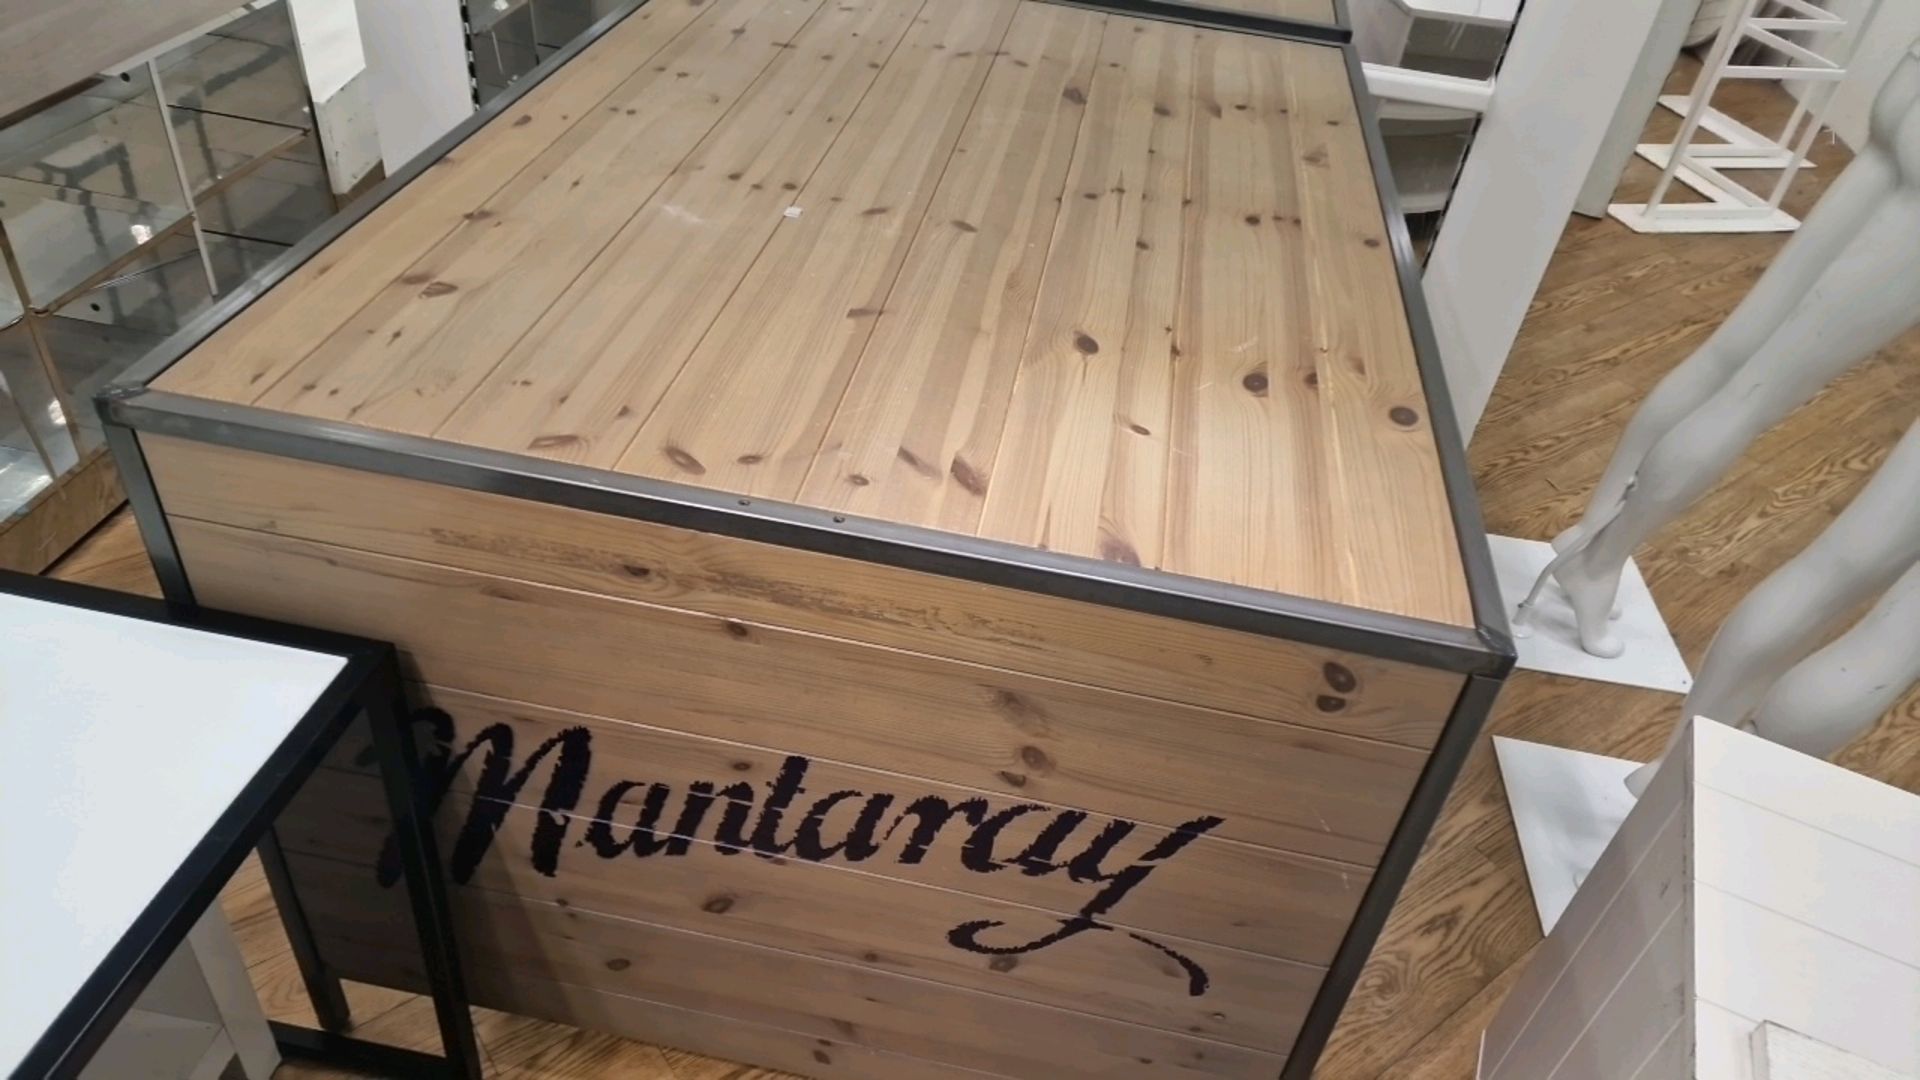 Mantaray Wooden Display Unit - Image 3 of 3